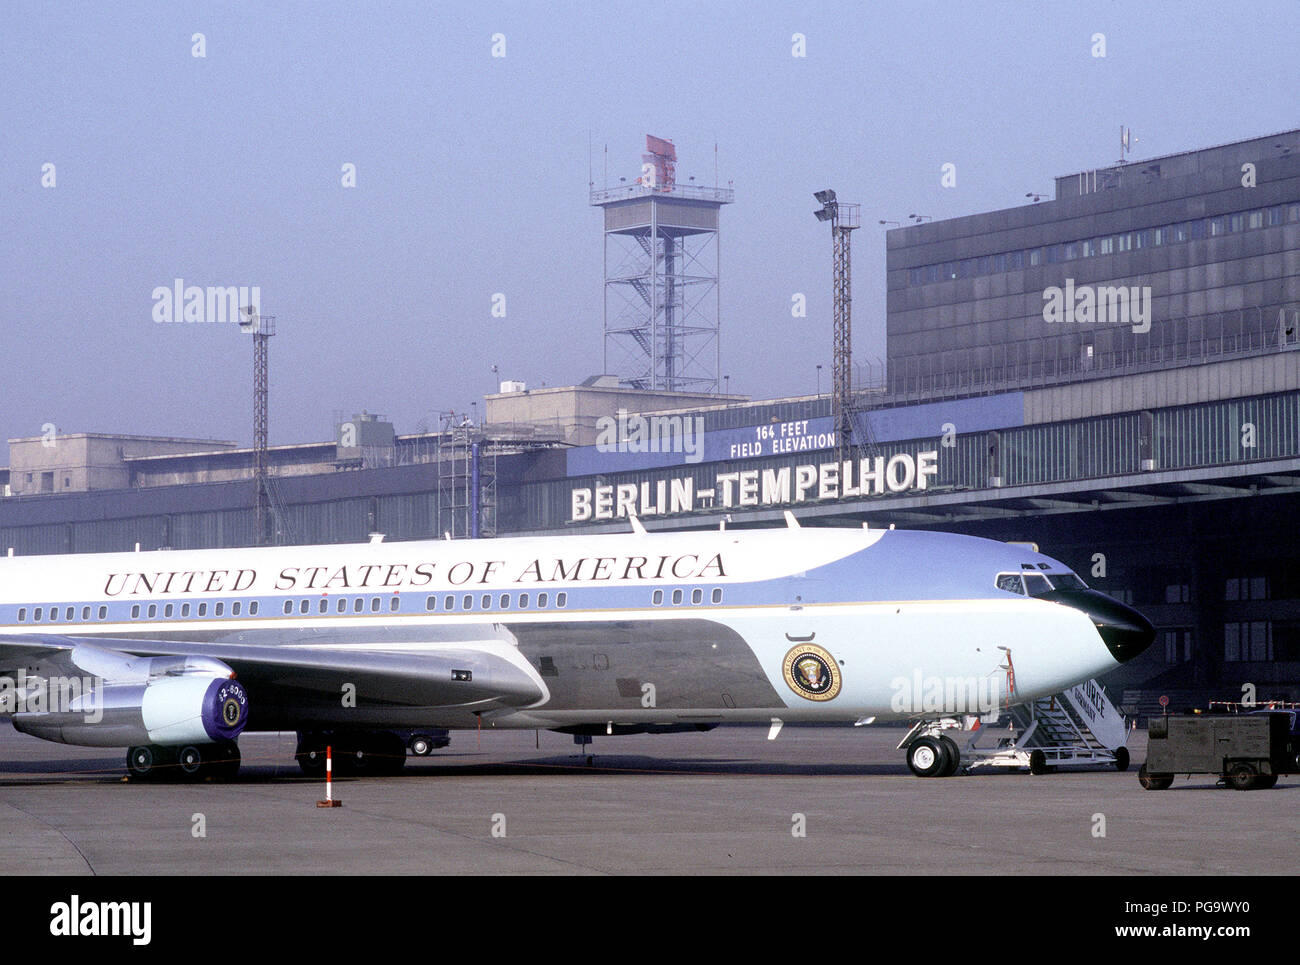 Air Force One, das VC-137 C Stratoliner Flugzeugen verwendet werden, um den Präsidenten zu Transport, sitzt in einem abgesperrten Bereich in der Nähe des Terminalgebäudes in Tempelhof Zentral Flughafen während Präsident Reagans Besuch in Berlin. Stockfoto